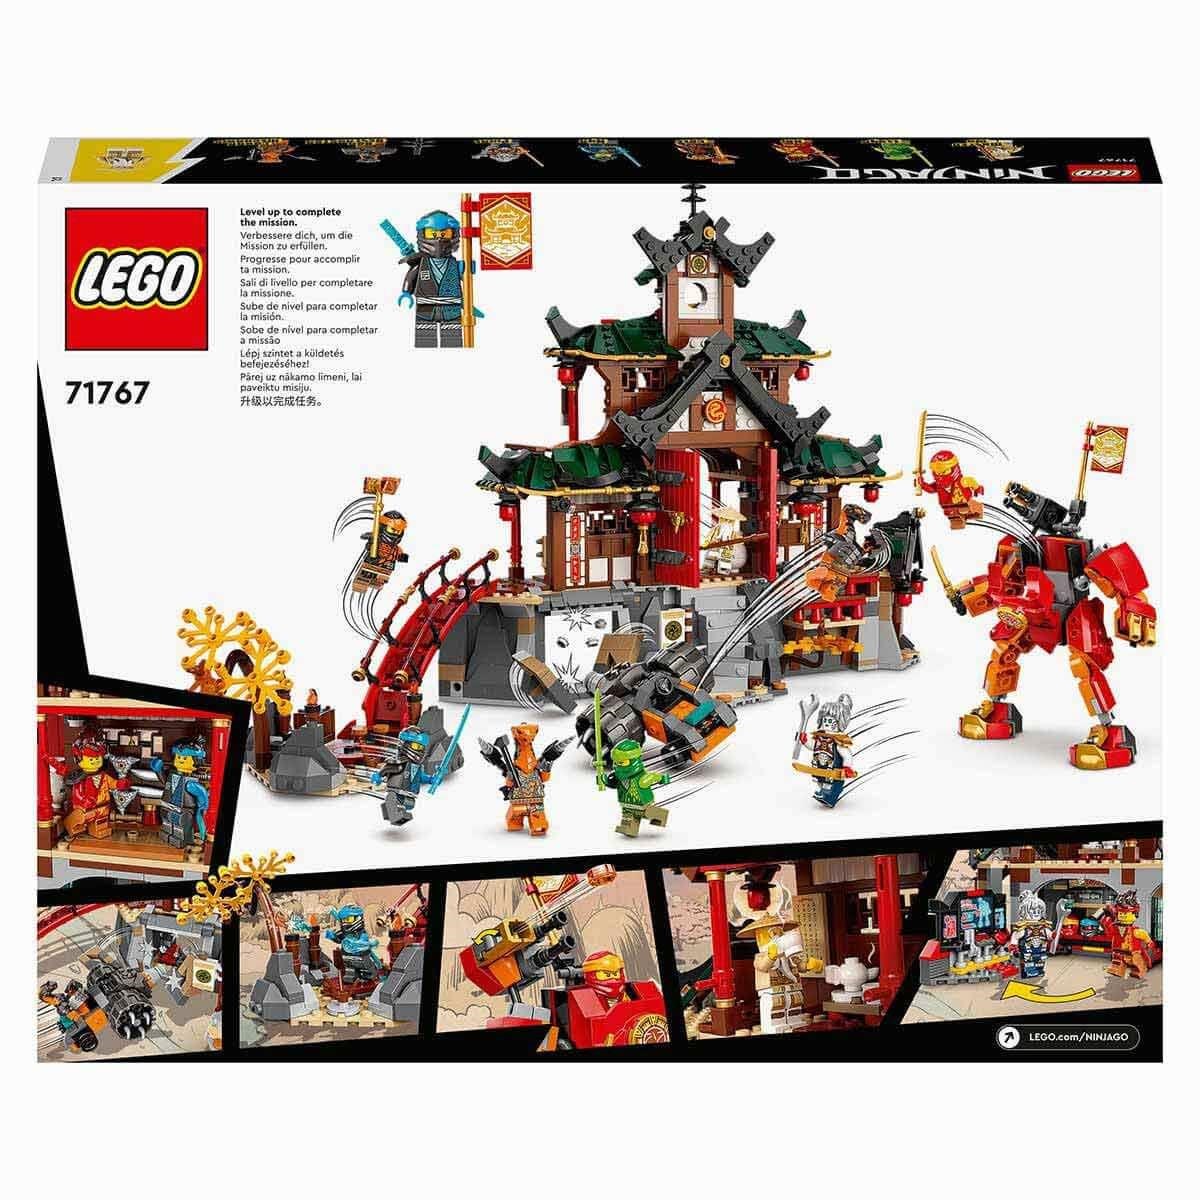 Lego Ninjago Ninja Dojo Tapınağı 71767 | Toysall